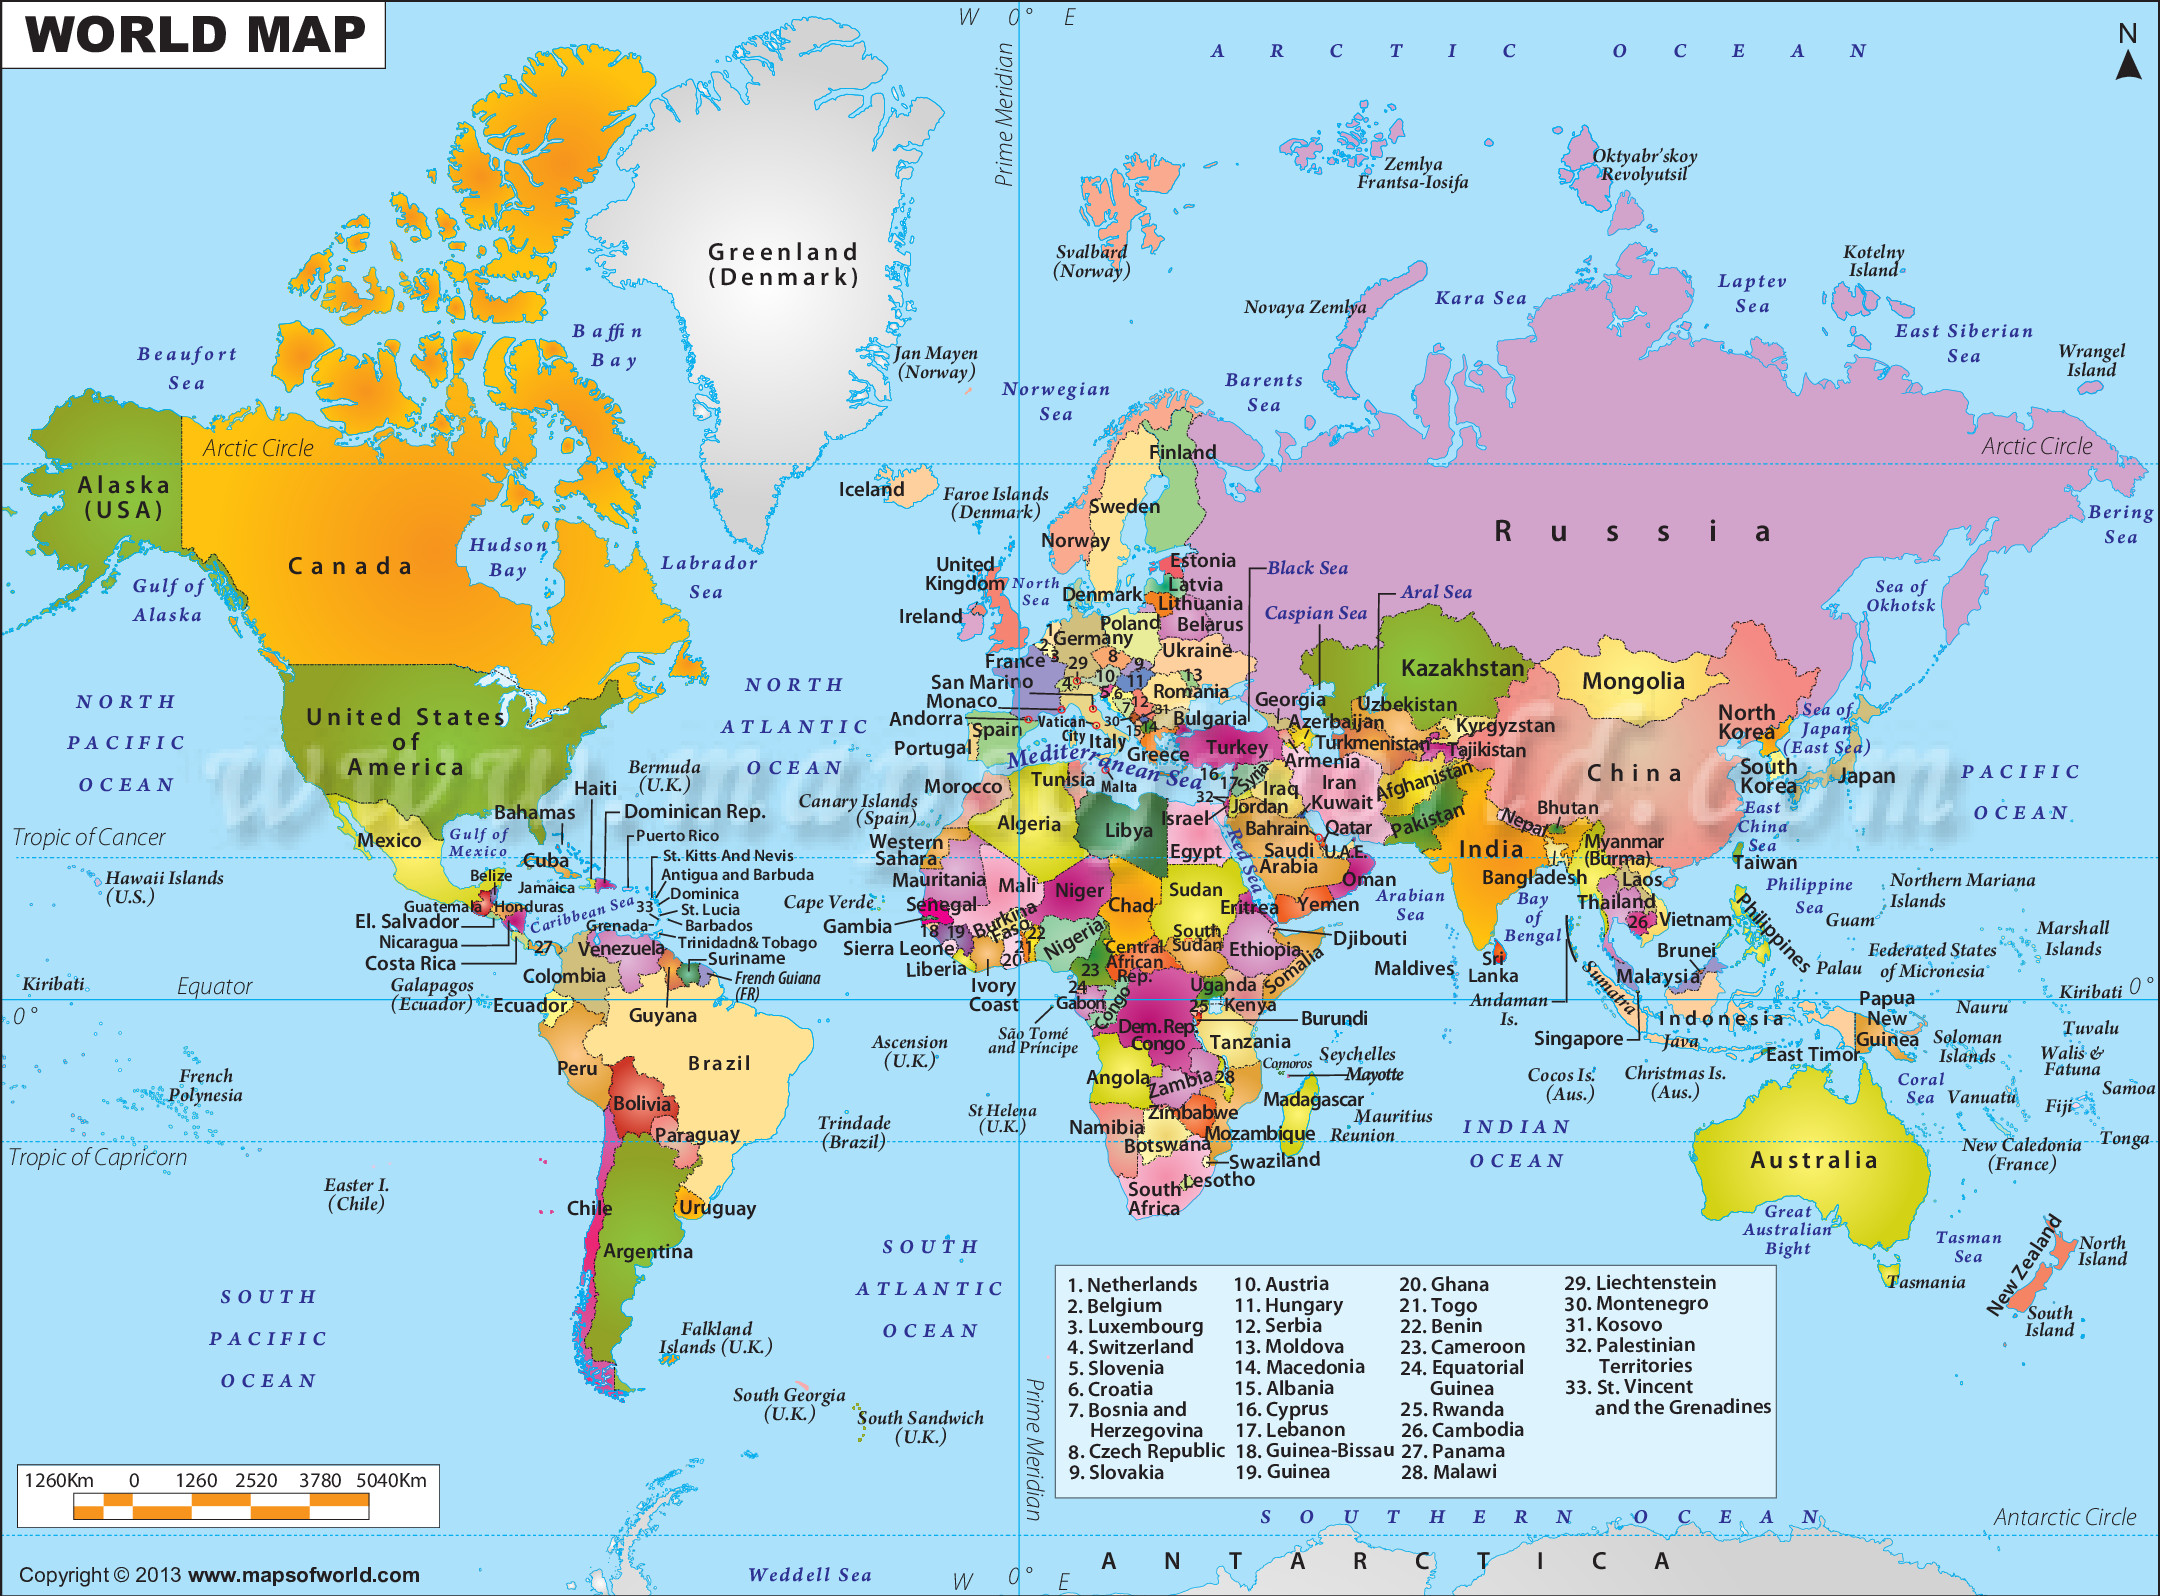 Tổng quan về ảnh bản đồ thế giới và các dự án sử dụng nó